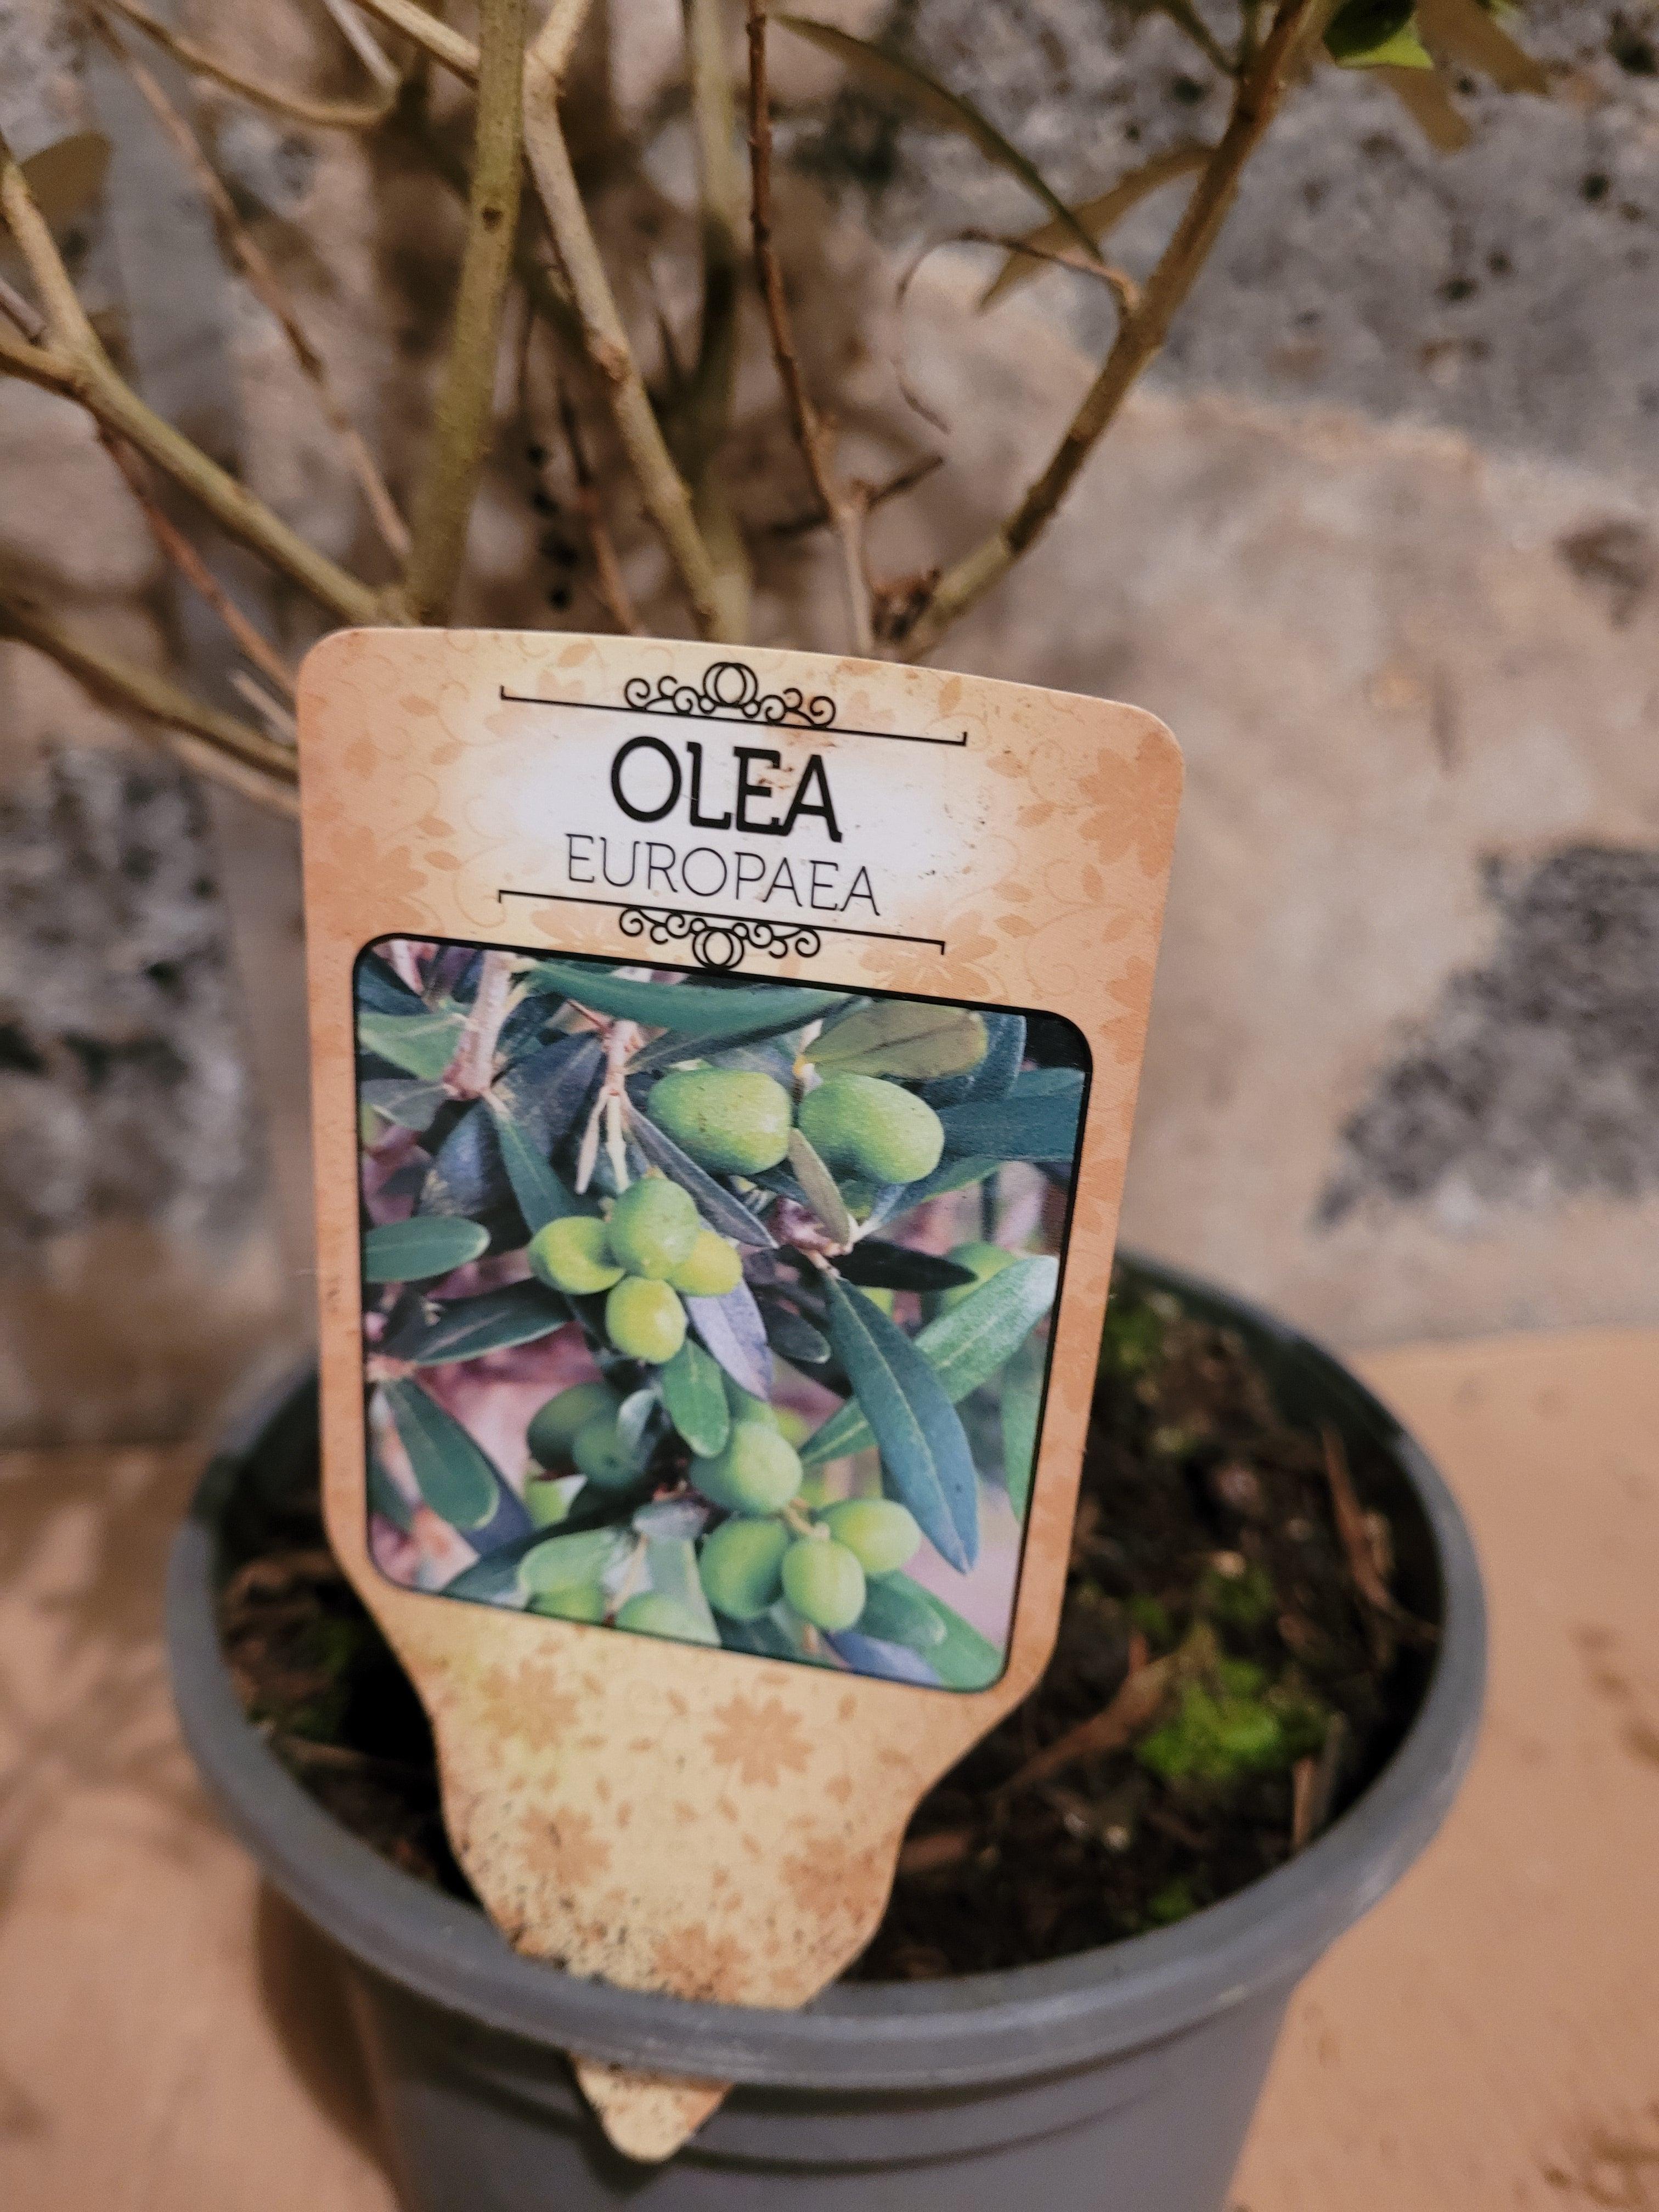 Olea europea - Olivenbaum Ölbaum - Image 